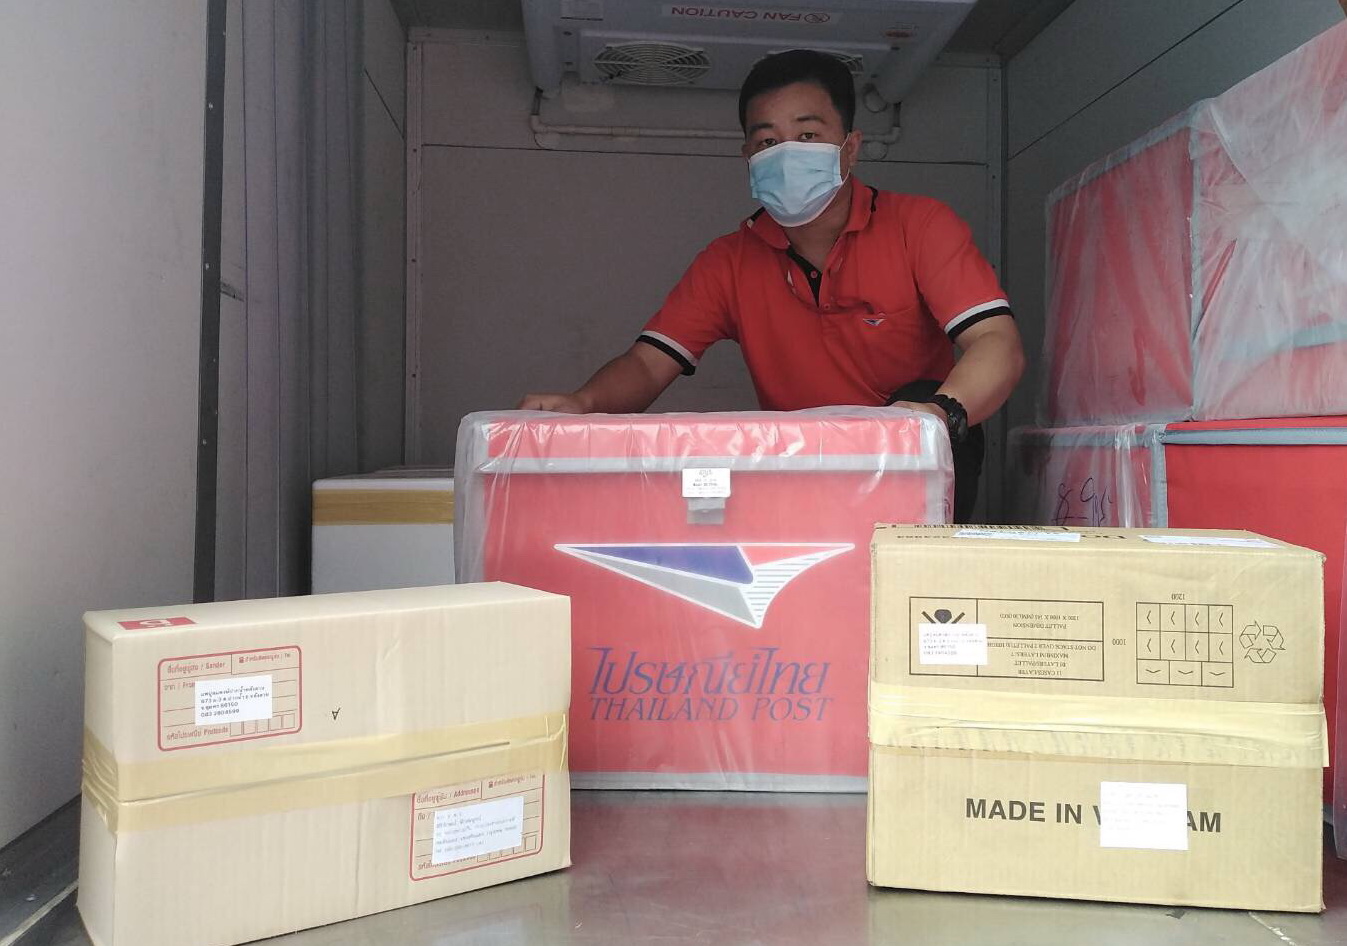 สดทั่วไทย!! ไปรษณีย์ไทยส่งอาหารทะเลสดๆ จากภาคใต้  ขนส่งควบคุมอุณหภูมิด้วยบริการ “ฟิ้วซ์ โพสต์” สู่คนไทยทั่วประเทศ